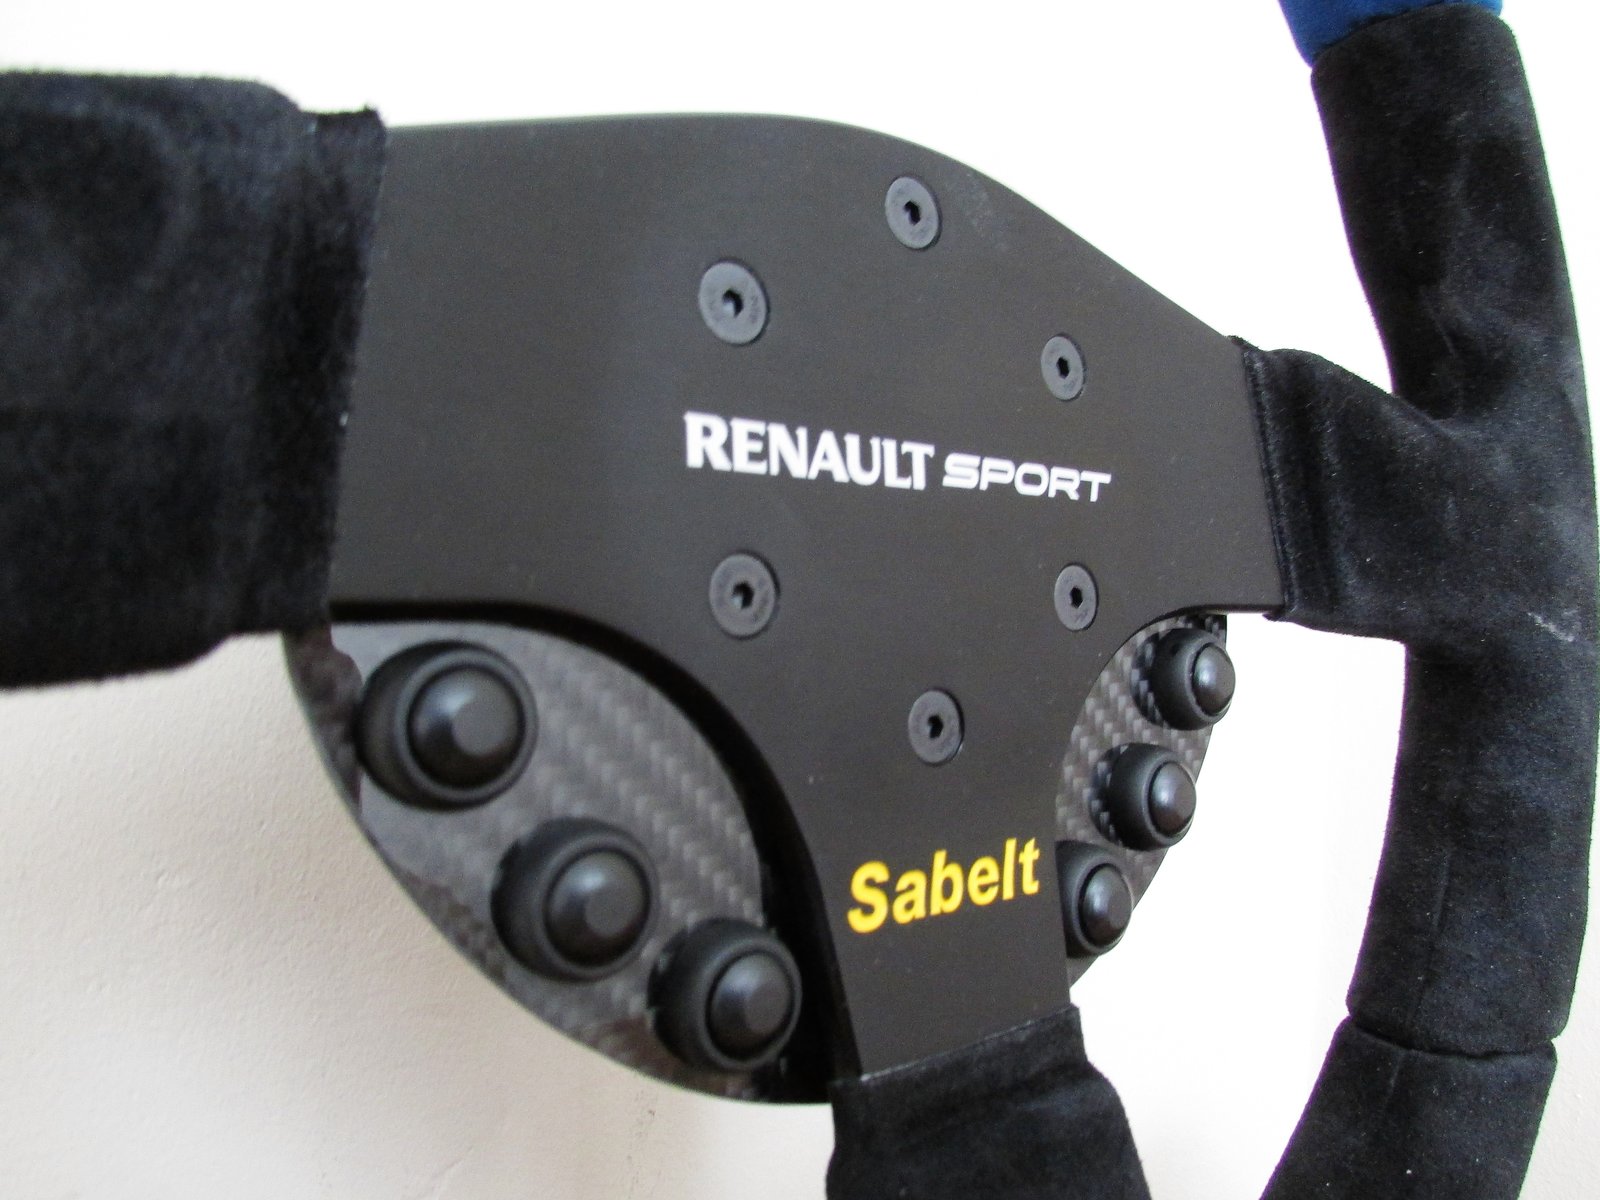 Volant Sabelt Renault Sport (nouveau logo)